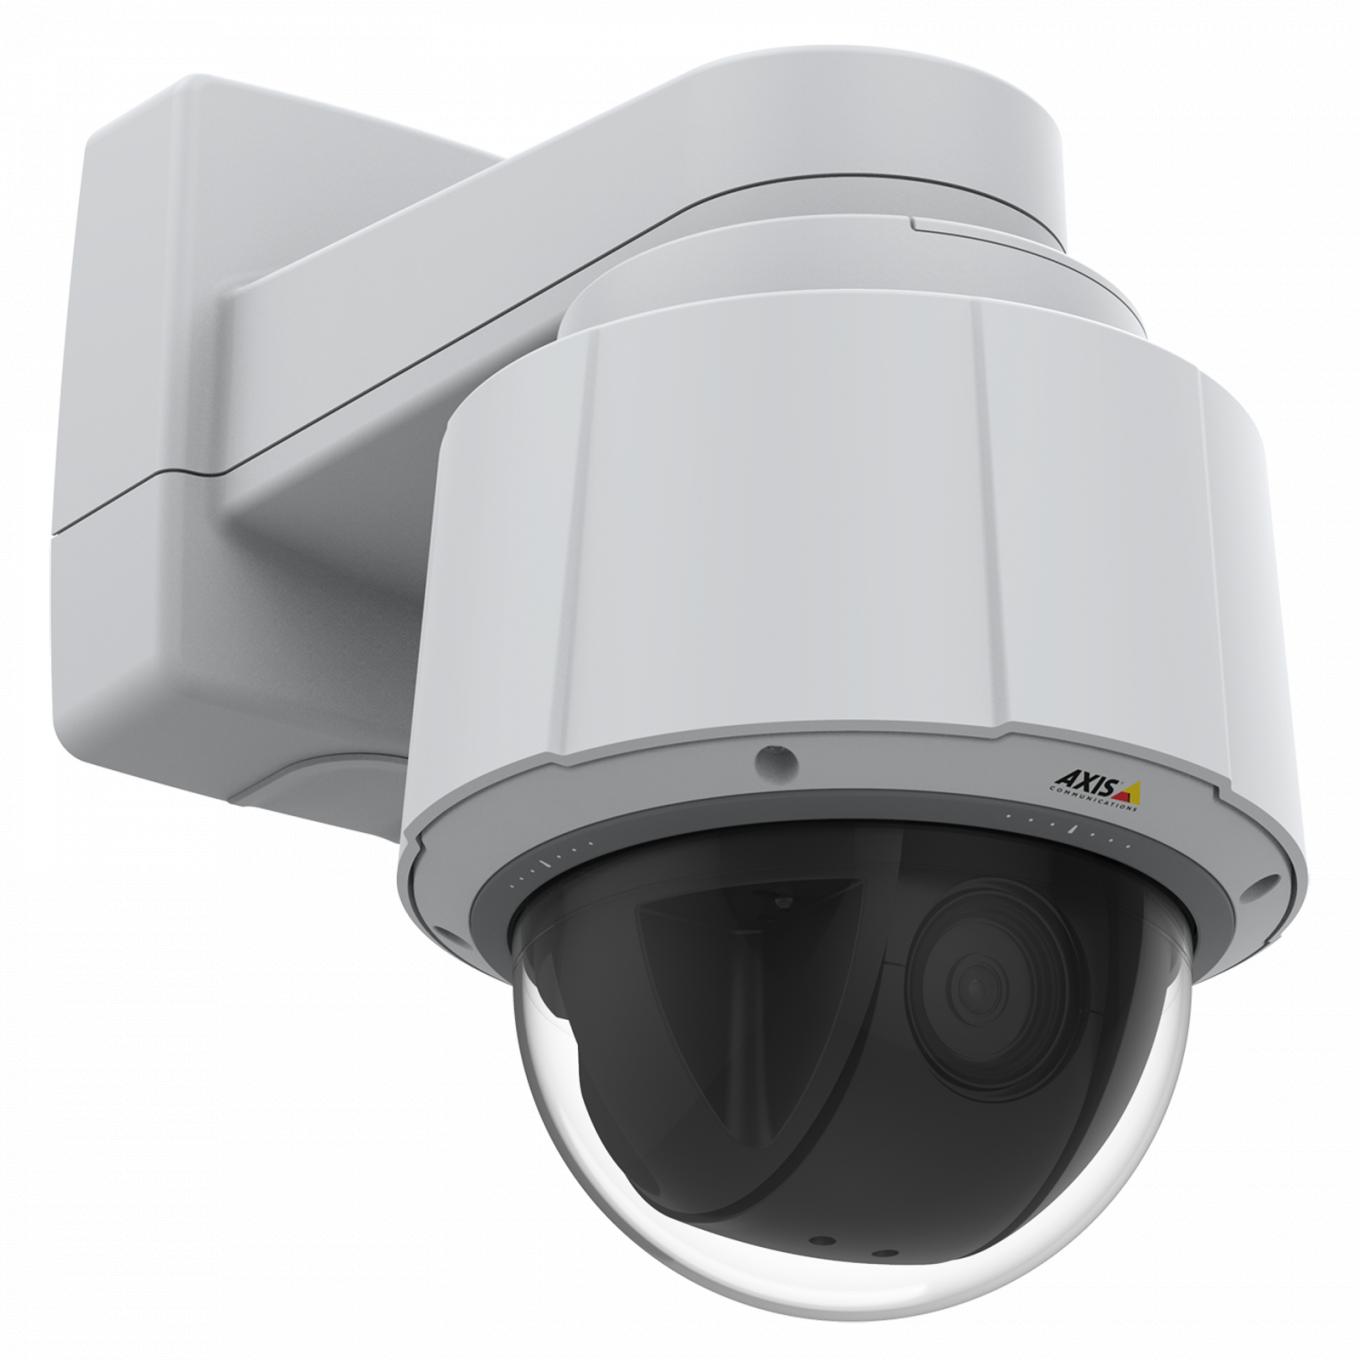 AXIS Q6075 IP Camera è dotata di funzioni PTZ per l'uso in ambienti interni con HDTV 720p e zoom 30x ottico